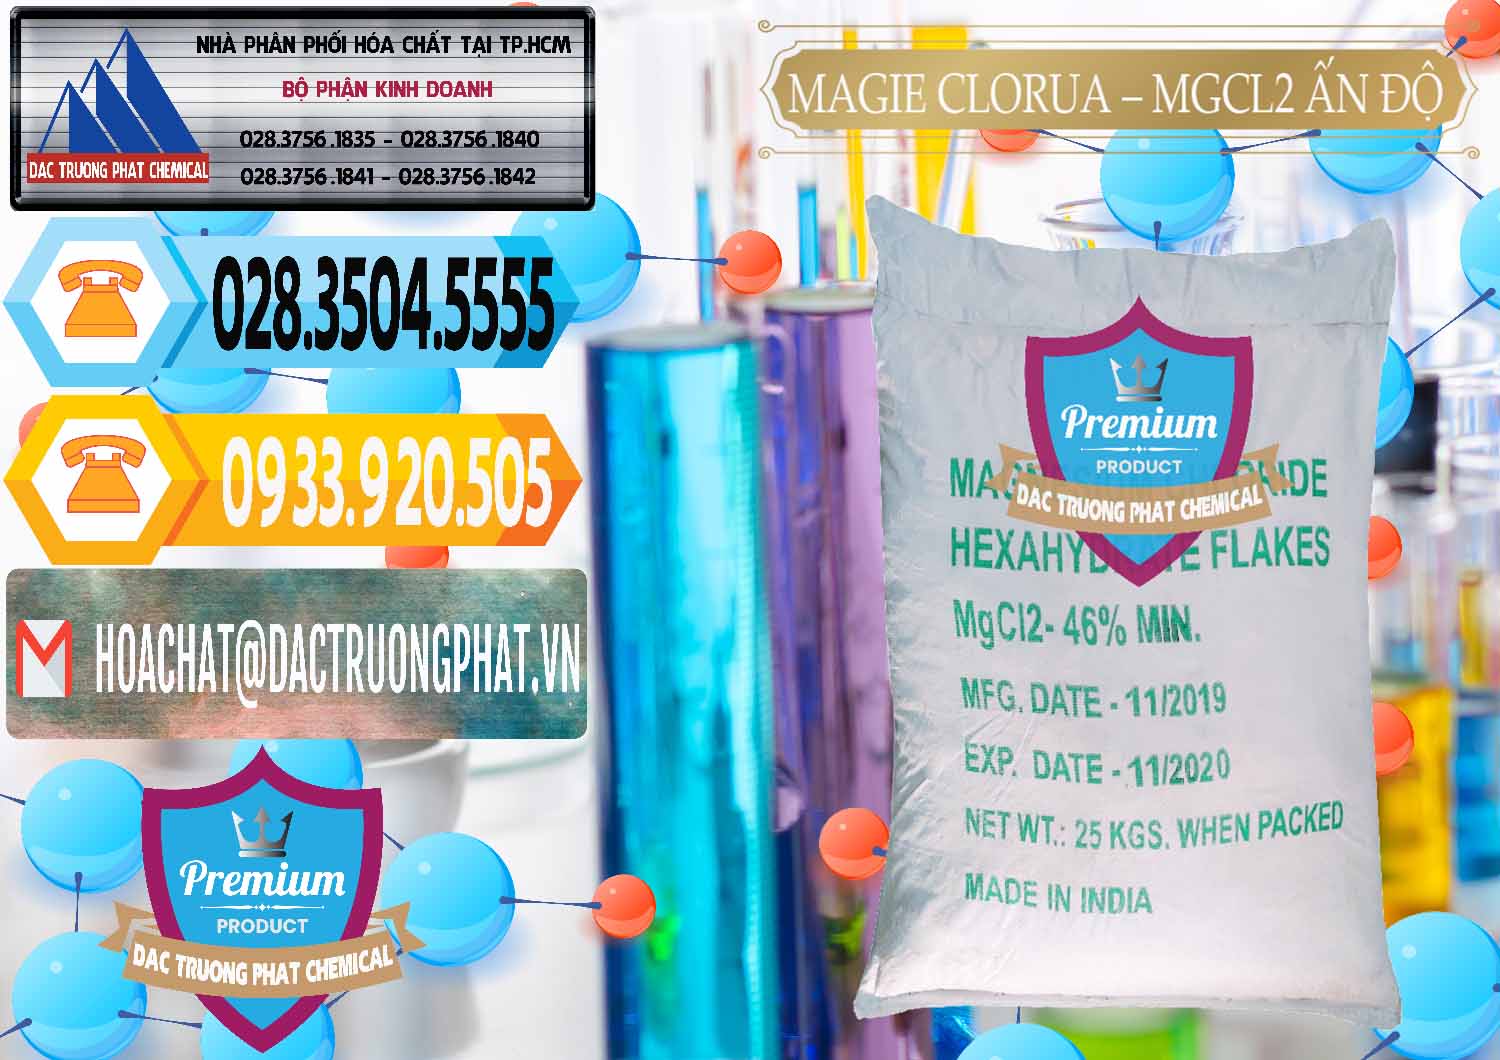 Công ty chuyên kinh doanh & bán Magie Clorua – MGCL2 46% Dạng Vảy Ấn Độ India - 0092 - Cty chuyên nhập khẩu - cung cấp hóa chất tại TP.HCM - hoachattayrua.net